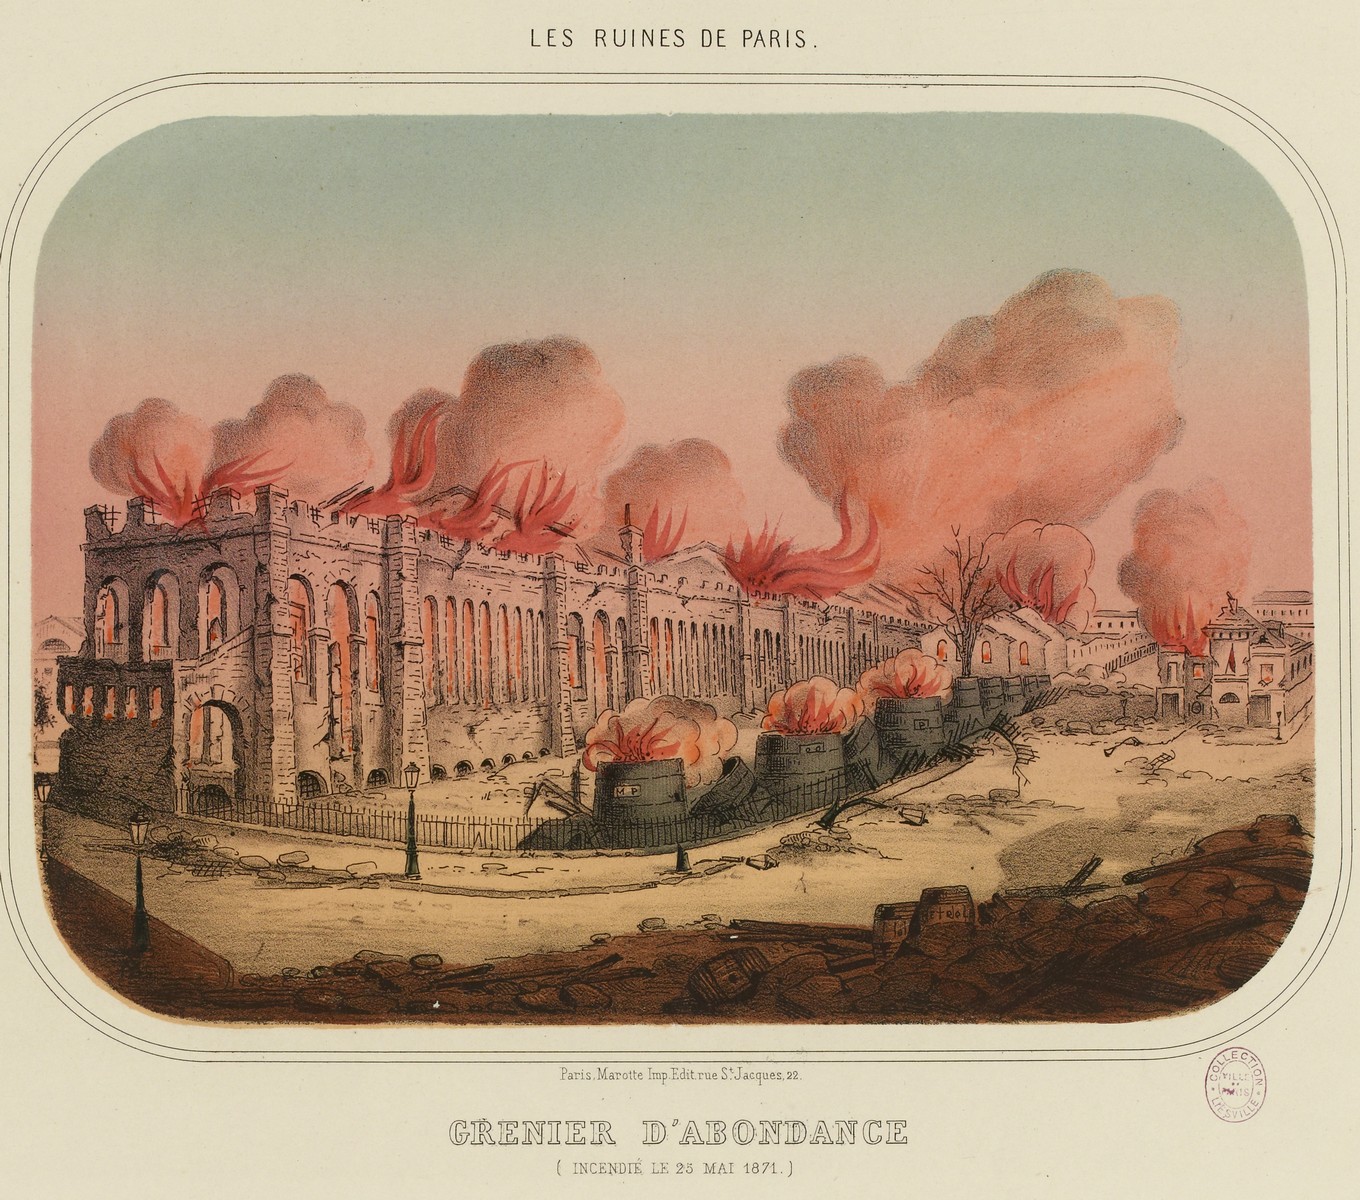 Les ruines de Paris. - Grenier d'abondance incendié le 25 Mai 1871 - Dessin anonyme (CC0 Paris Musées / Musée Carnavalet - Histoire de Paris)